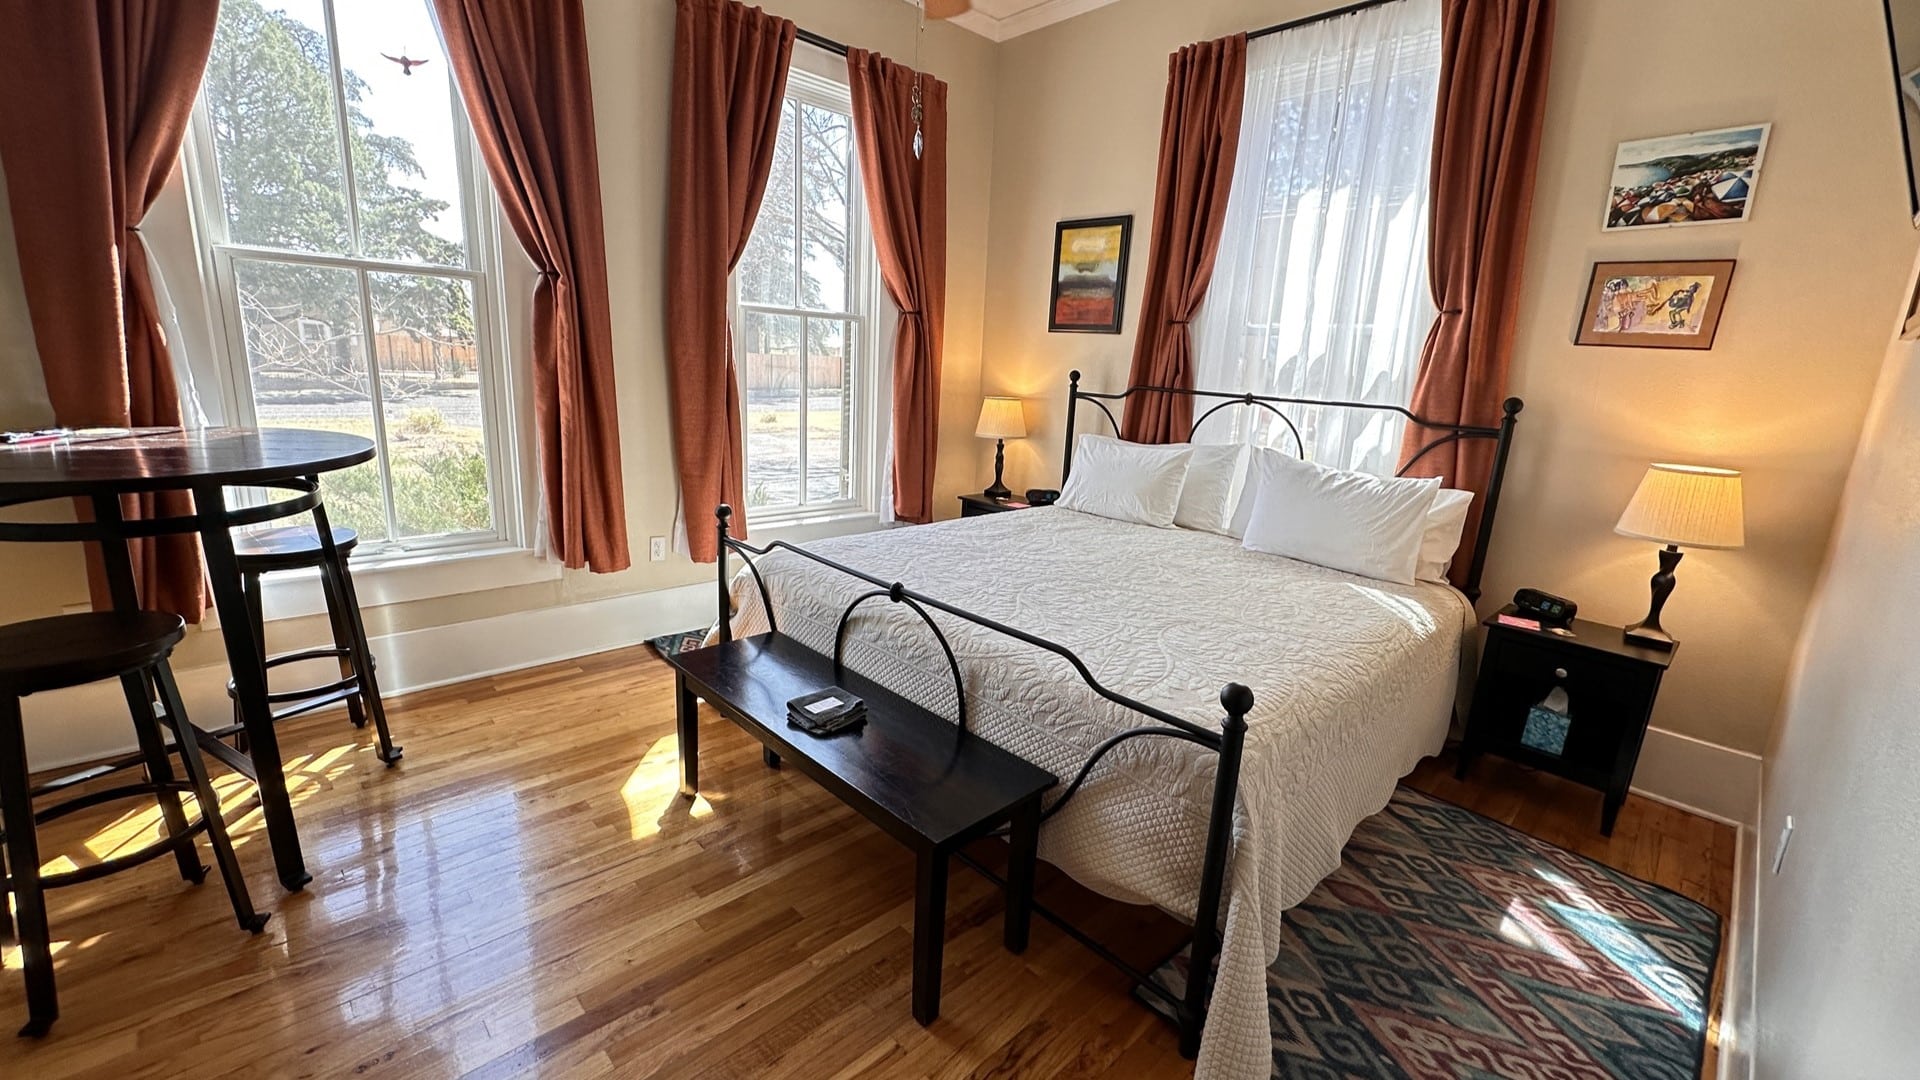 Eagle Peak room with windows, king bed, table, hardwood floors